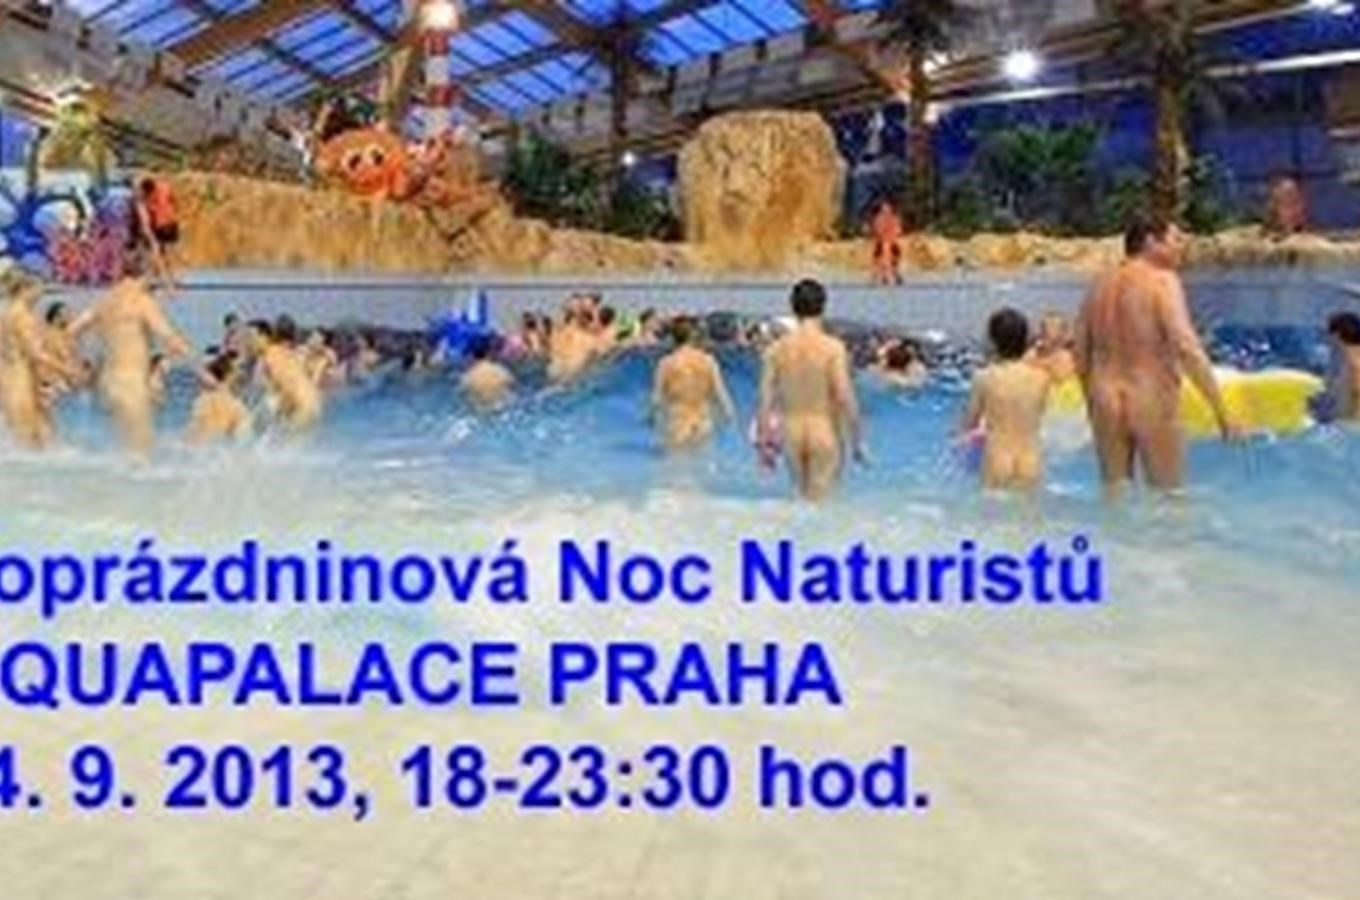 Poprázdninová Noc Naturistu Aquapalace Praha